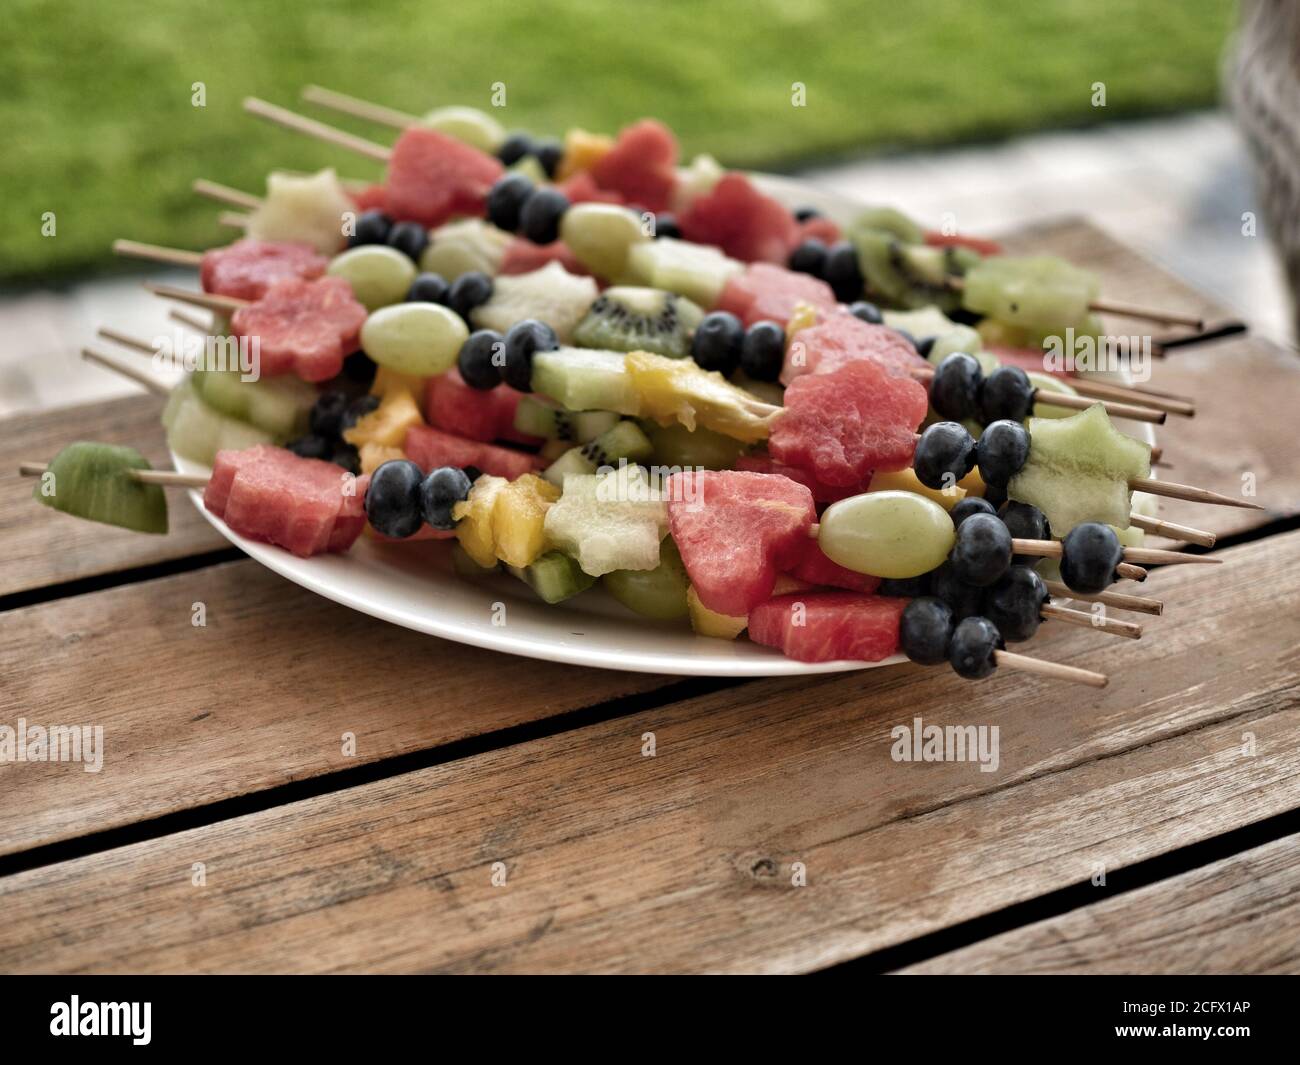 Frisches Obst auf Holzstäbchen bereit Tisch für Gartenparty. Heidelbeeren, Trauben, Kiwi, Ananas, Wassermelone. Verschwommenes grünes Gras auf dem Hintergrund. Stockfoto